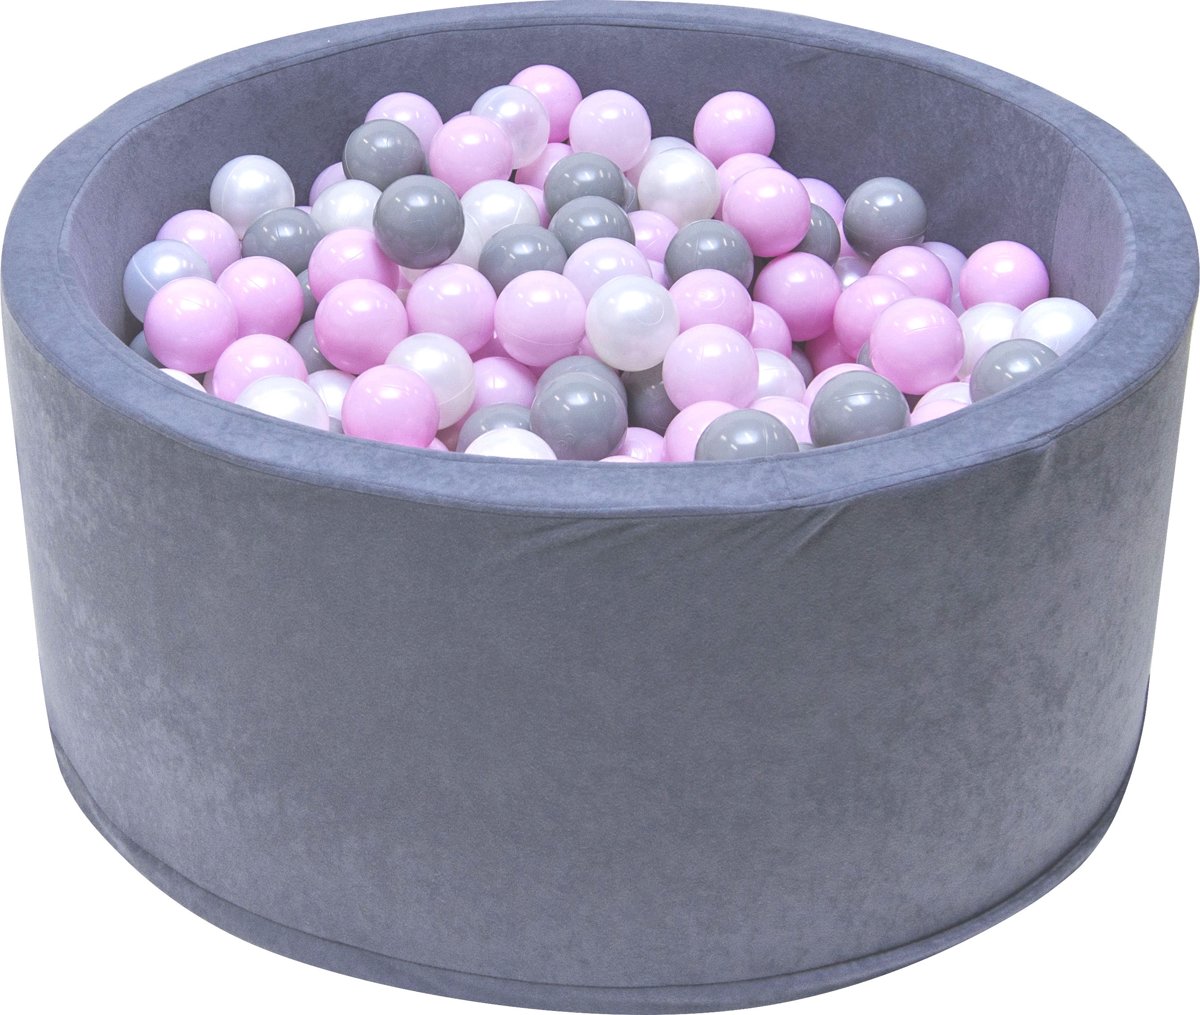 Ballenbak | Grijs incl.  200 witte, grijze en roze ballen